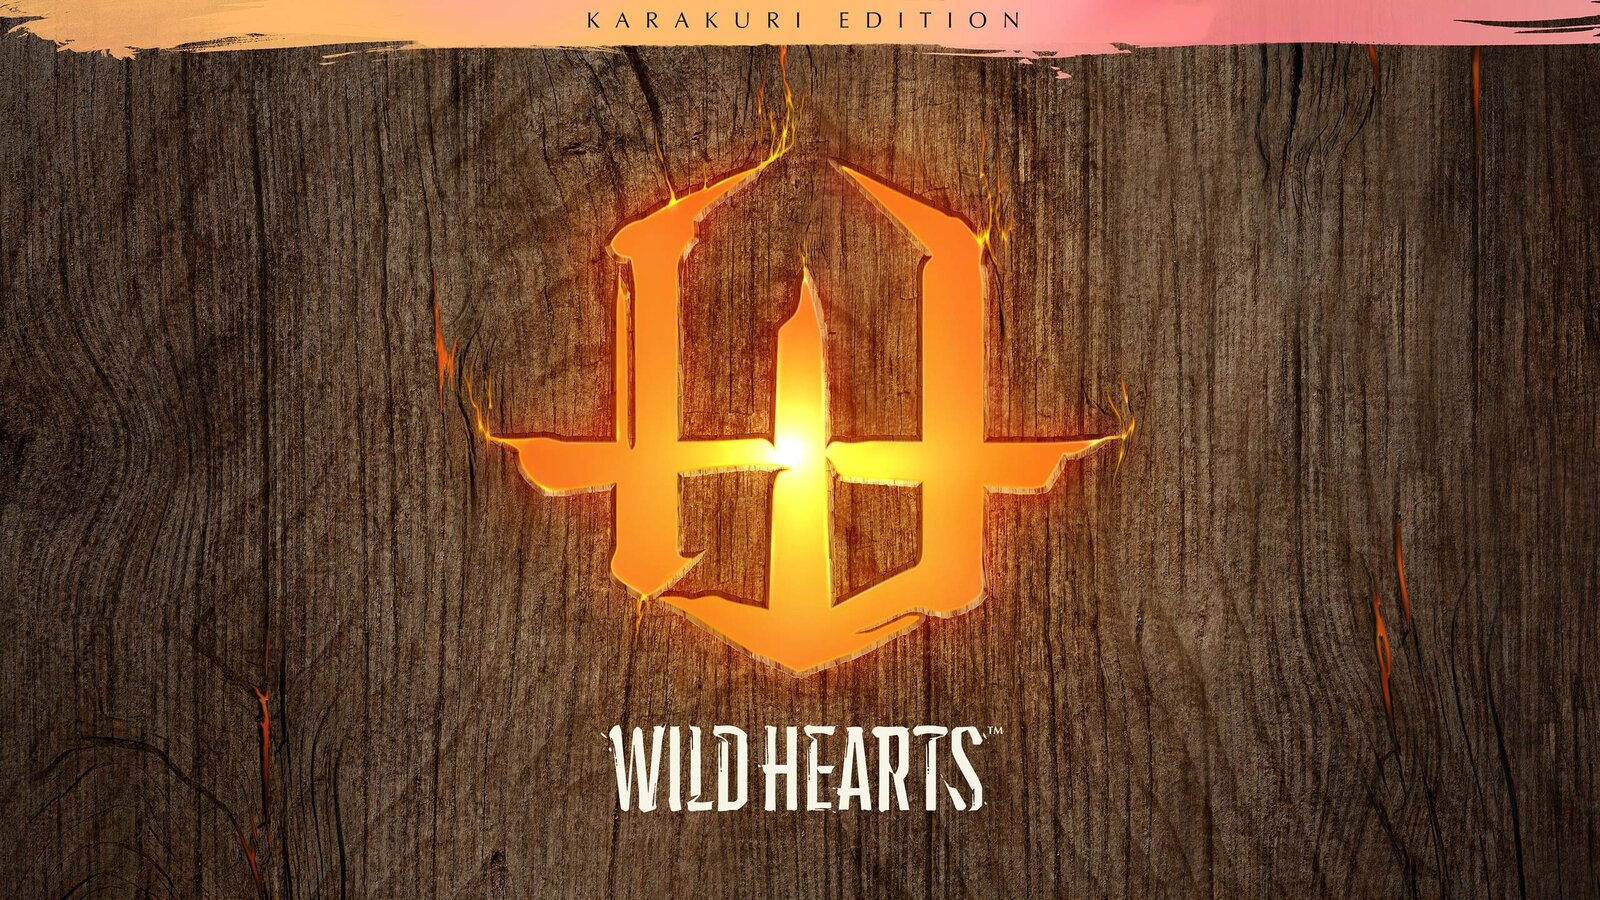 WILD HEARTS - Karakuri Edition